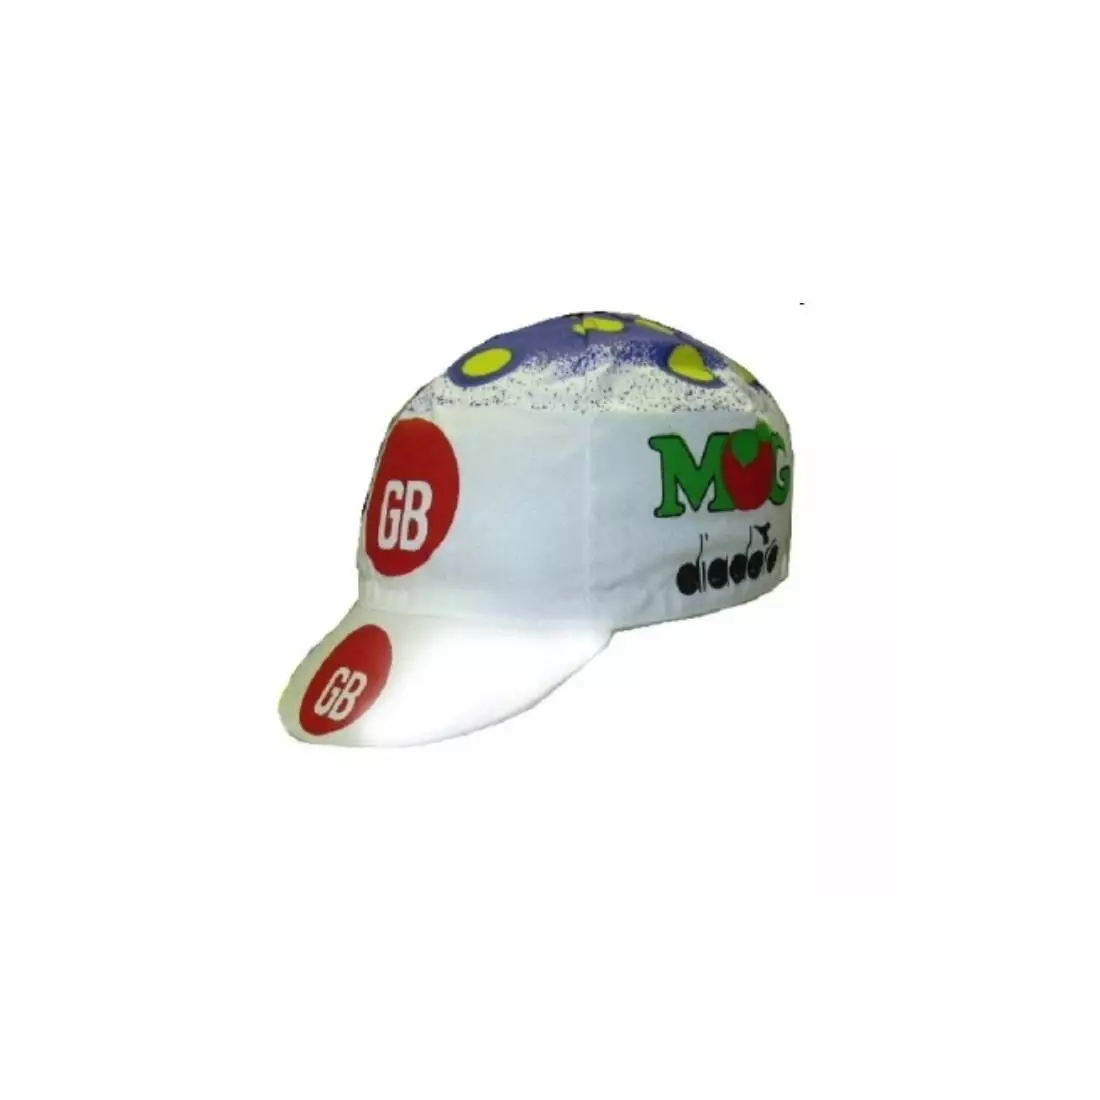 APIS PROFI DIADORA MG cycling cap with visor